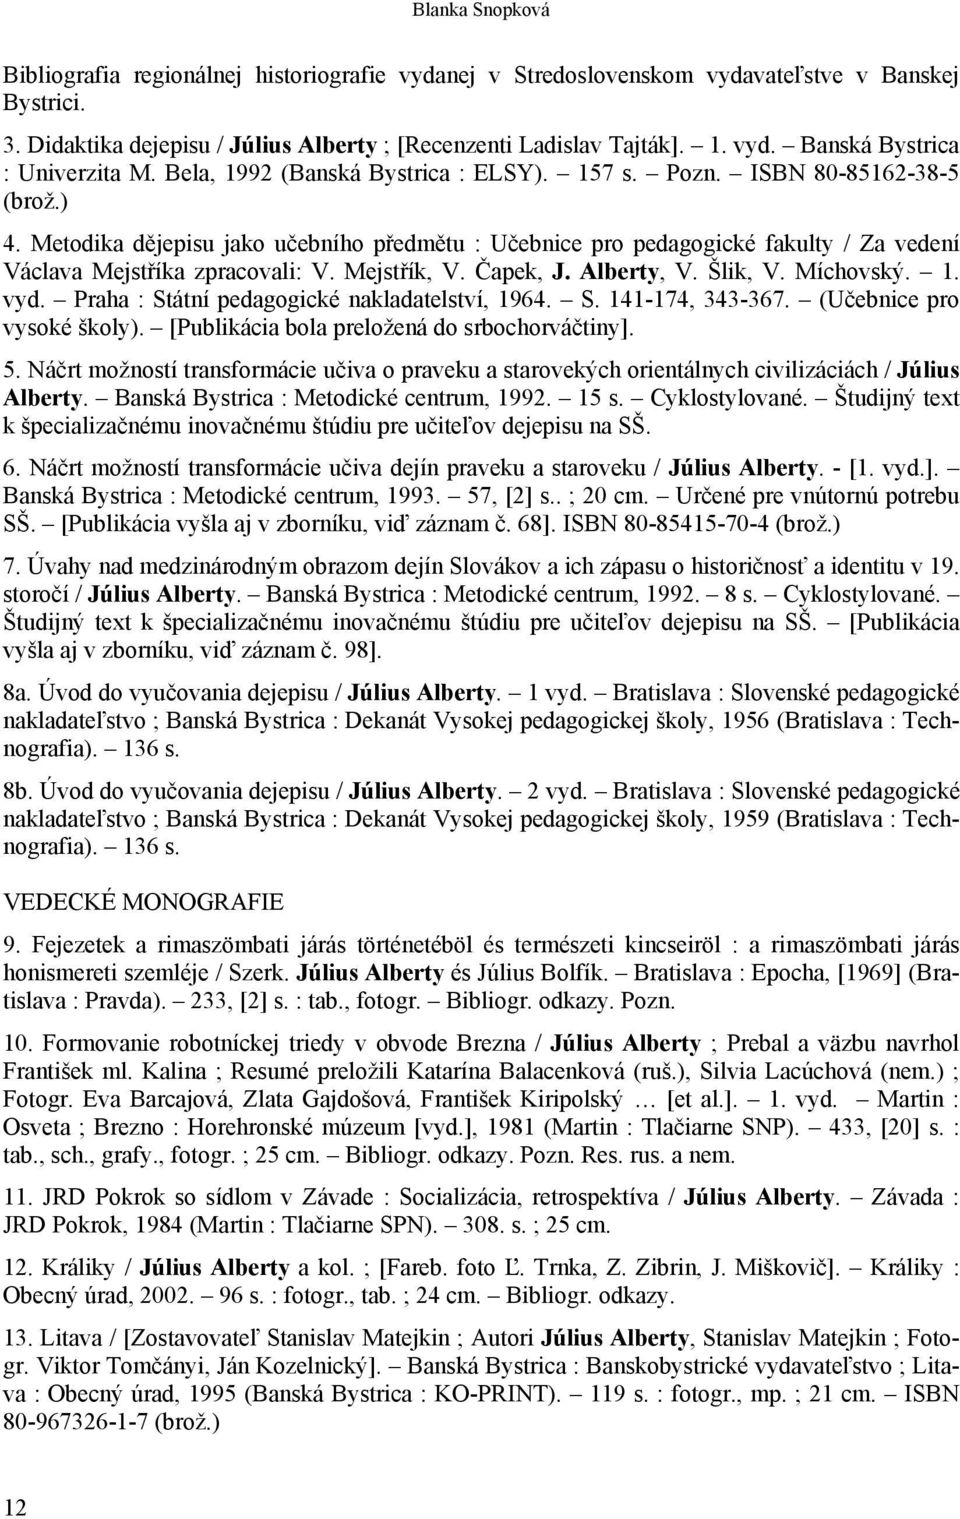 Mejstřík, V. Čapek, J. Alberty, V. Šlik, V. Míchovský. 1. vyd. Praha : Státní pedagogické nakladatelství, 1964. S. 141-174, 343-367. (Učebnice pro vysoké školy).